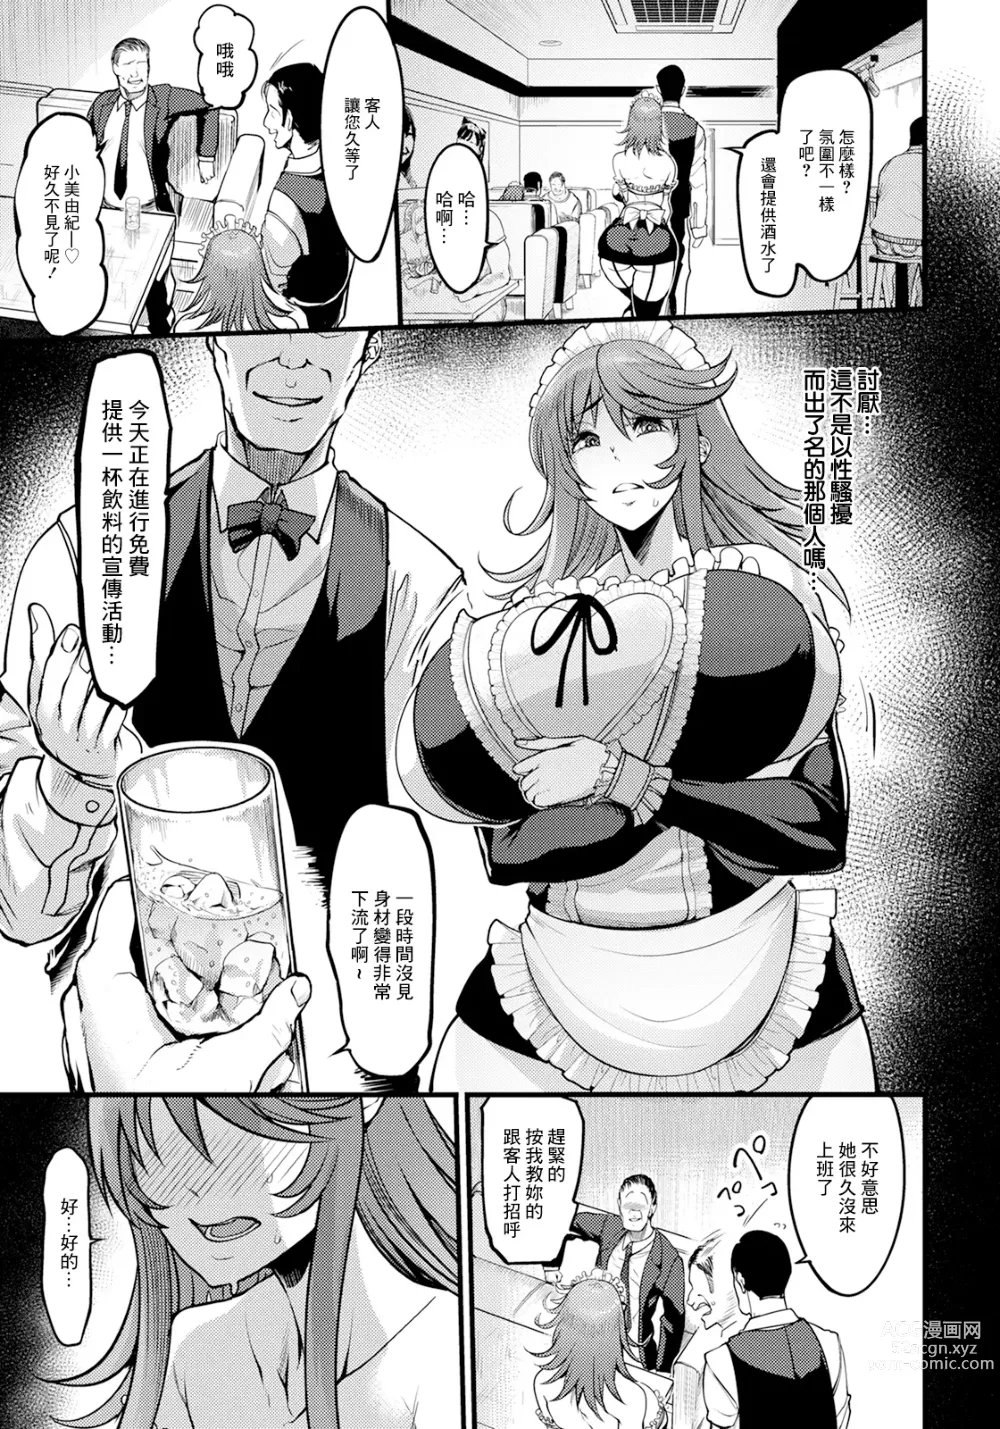 Page 7 of manga Uwa Kitsu Maid Cafe ~Hitozuma Kanjokuten~